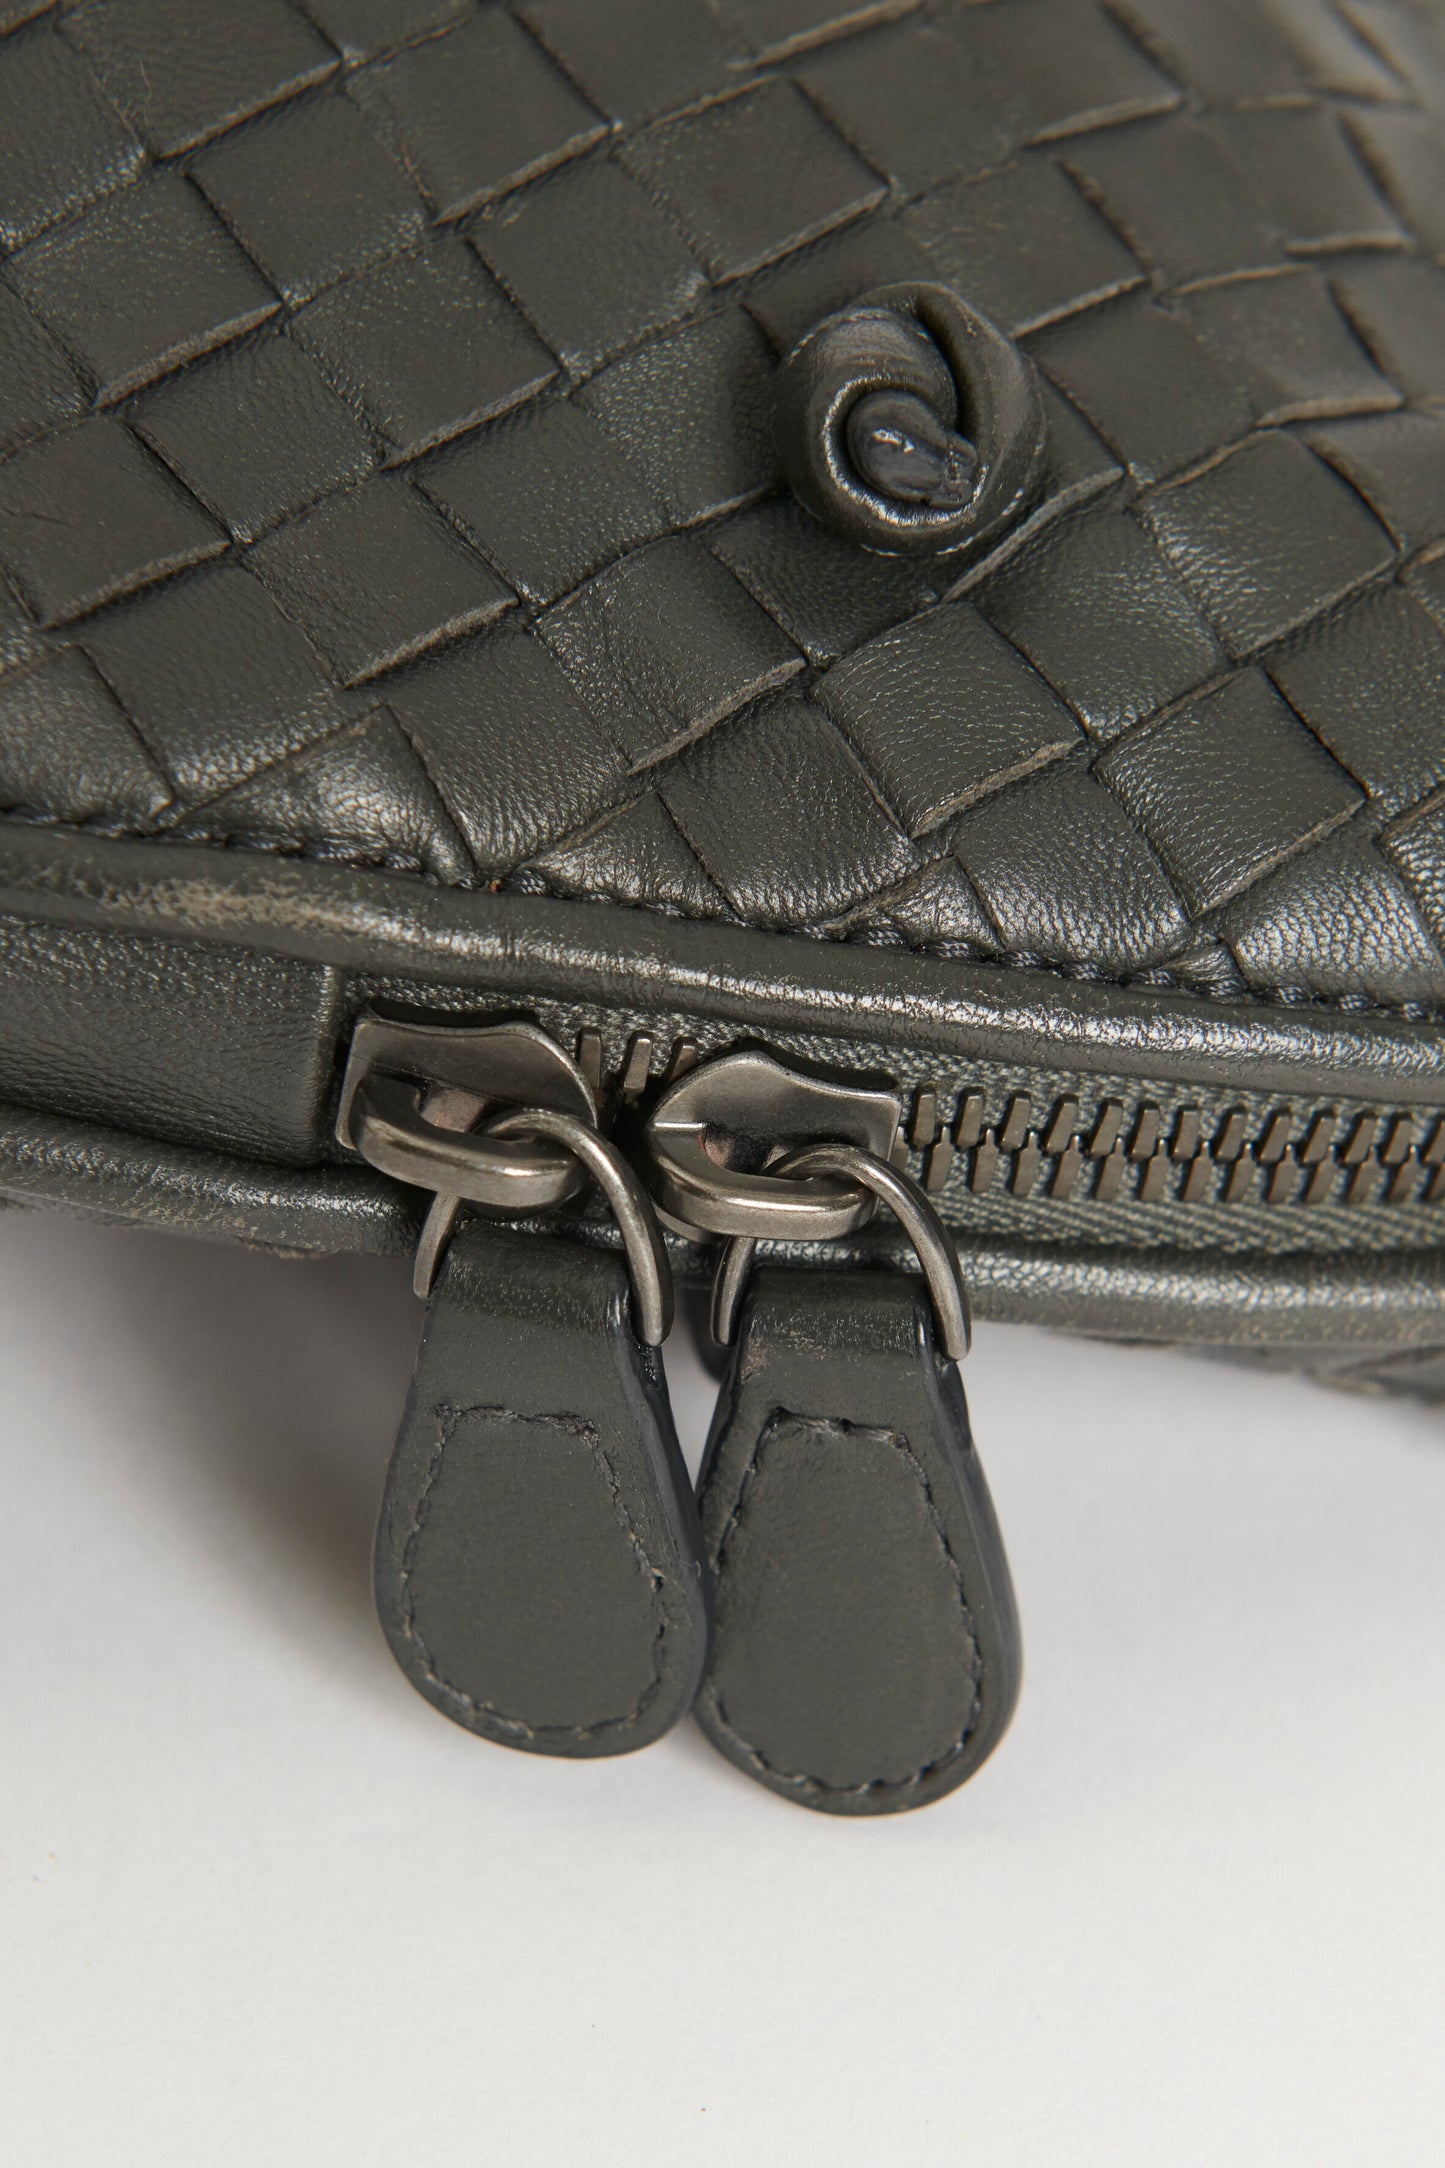 Grey Leather Intrecciato Nodini Preowned Bag